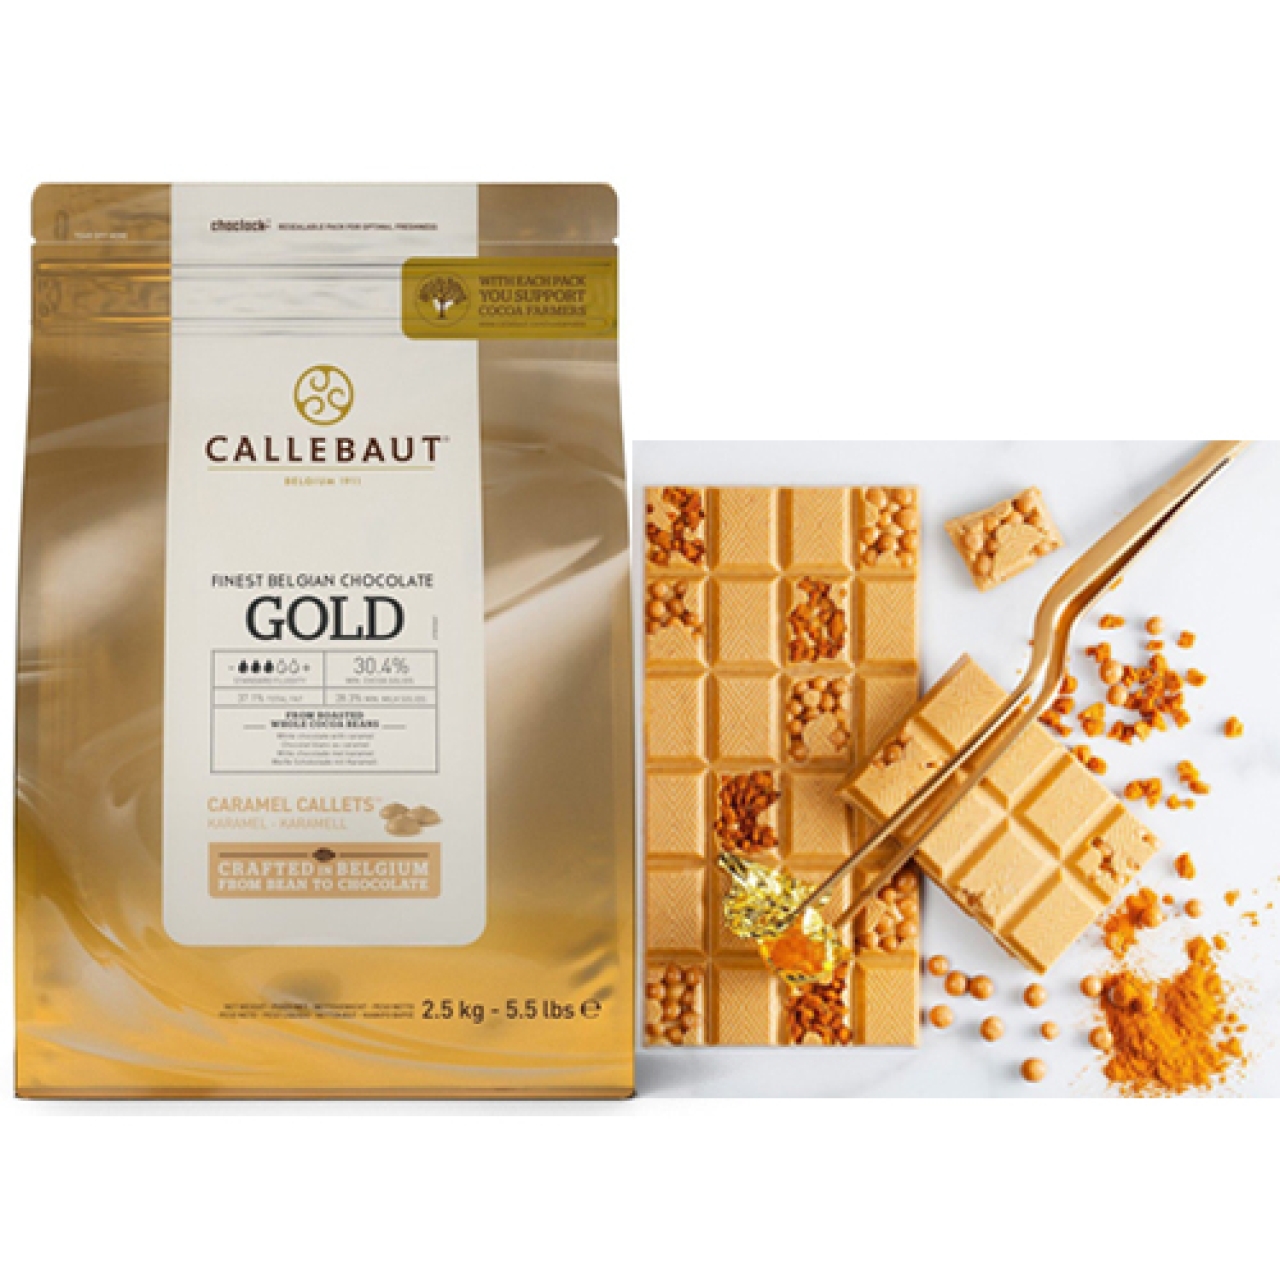 Callebaut Callets Gold